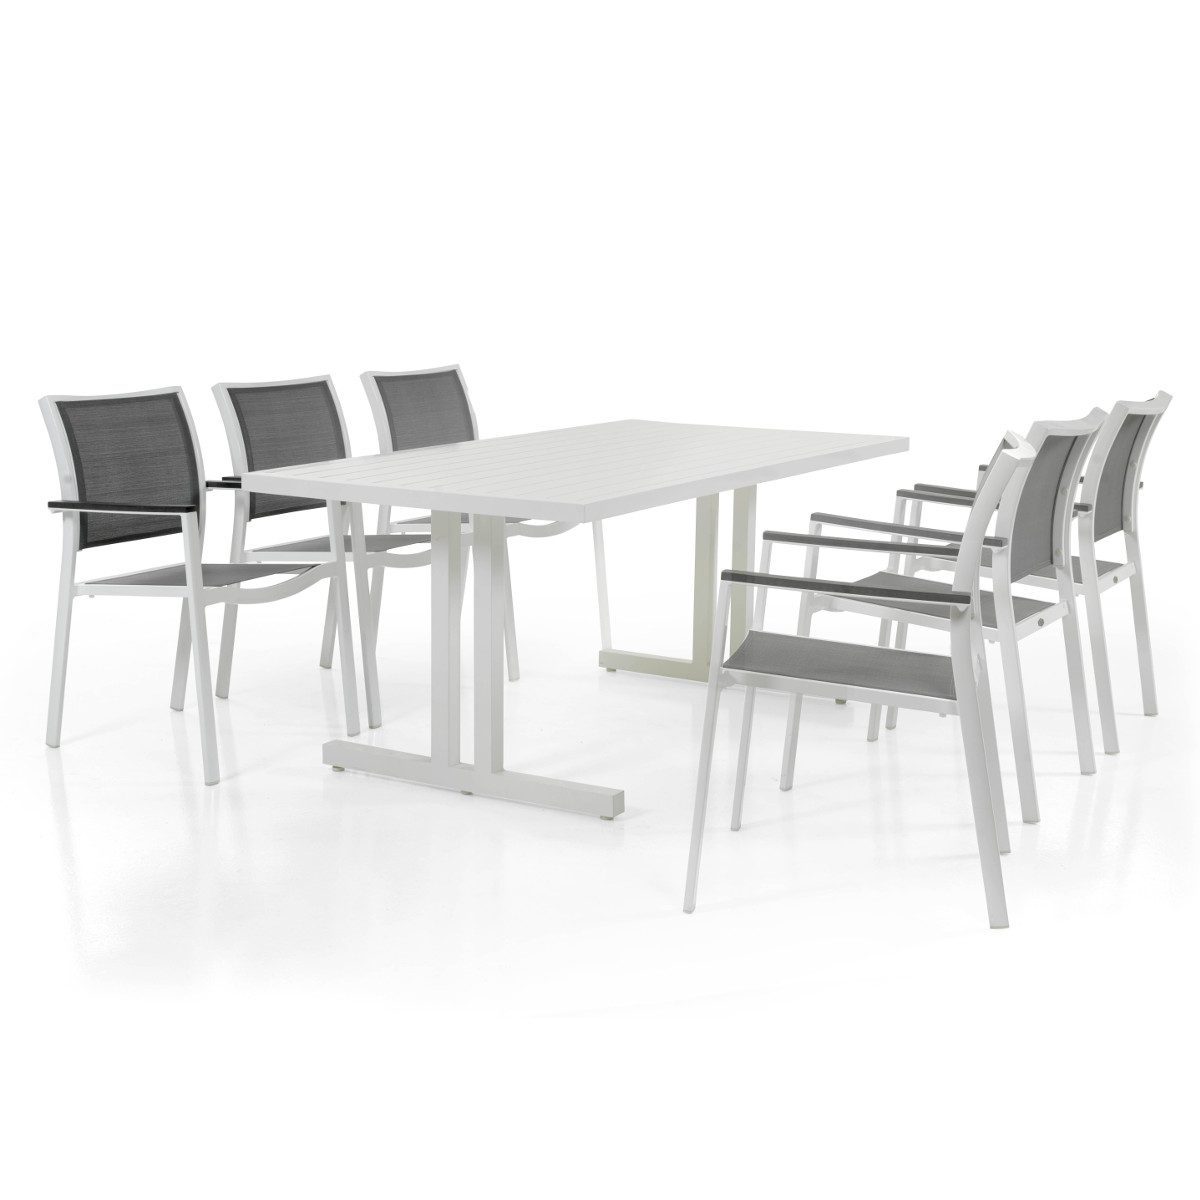 Scilla karmstol i vit aluminium och grå textileneväv tillsammans med Linia matbord i vit aluminium.